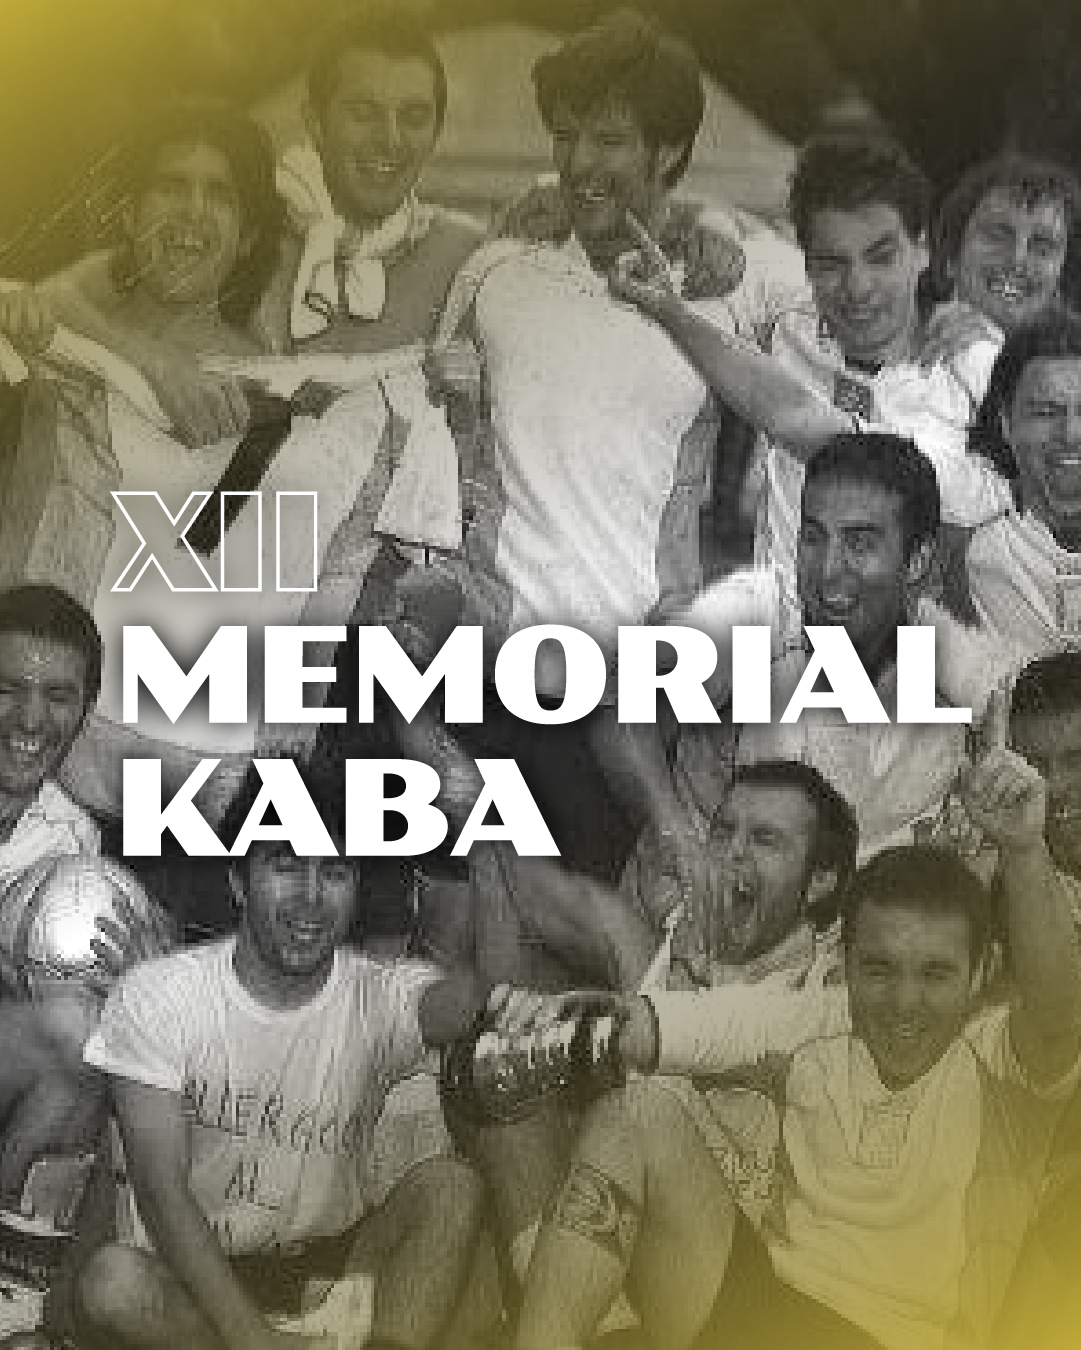 Memorial Kaba • CUS BicoccaInstagram – Promozione copia 4